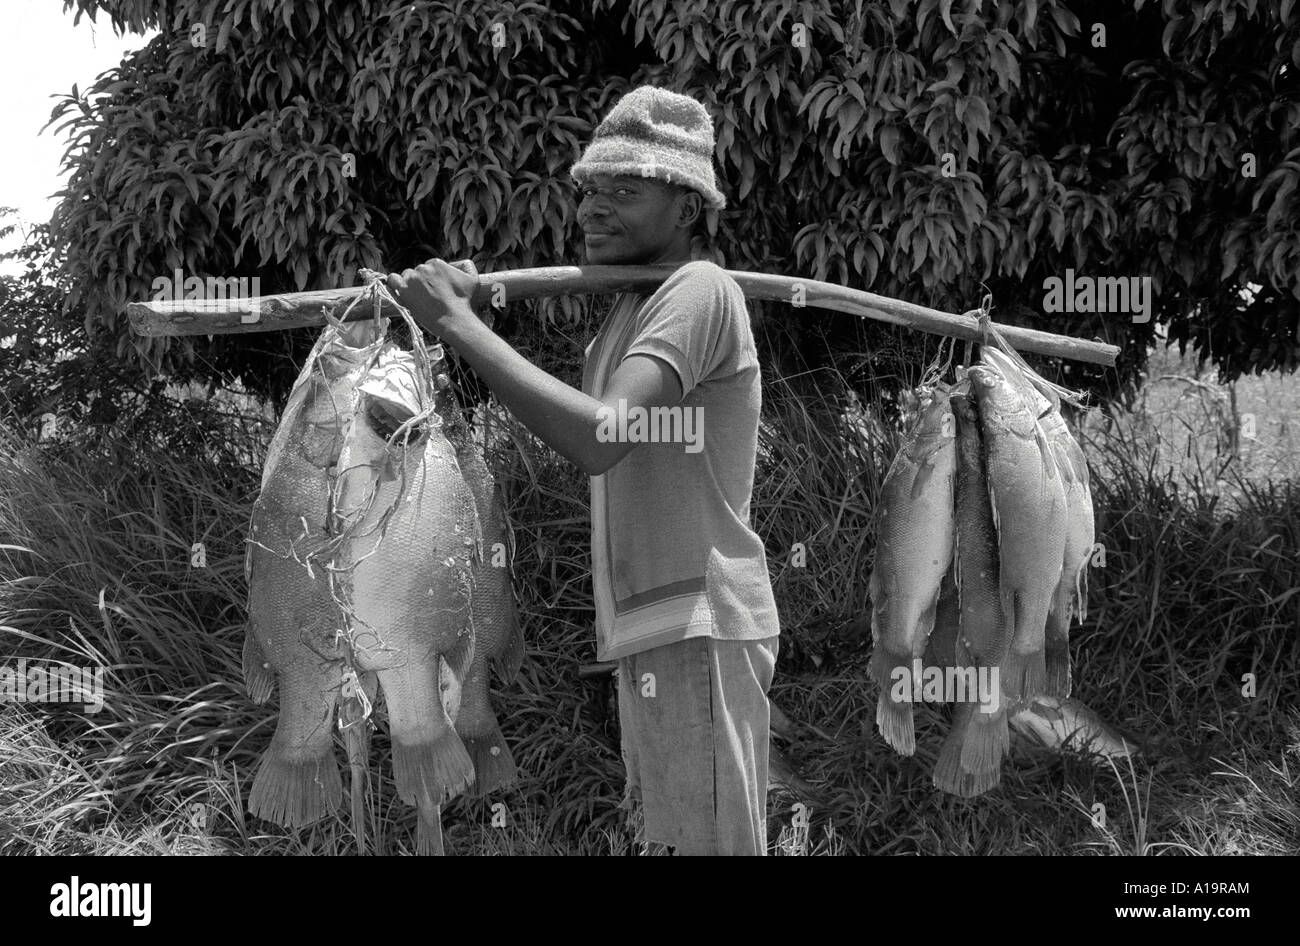 S/W eines Portiers, der einen Fang von Tilapia vom Viktoriasee auf einer Stange zum lokalen Markt trägt. Nyamirembe, Nordwest-Tansania Stockfoto